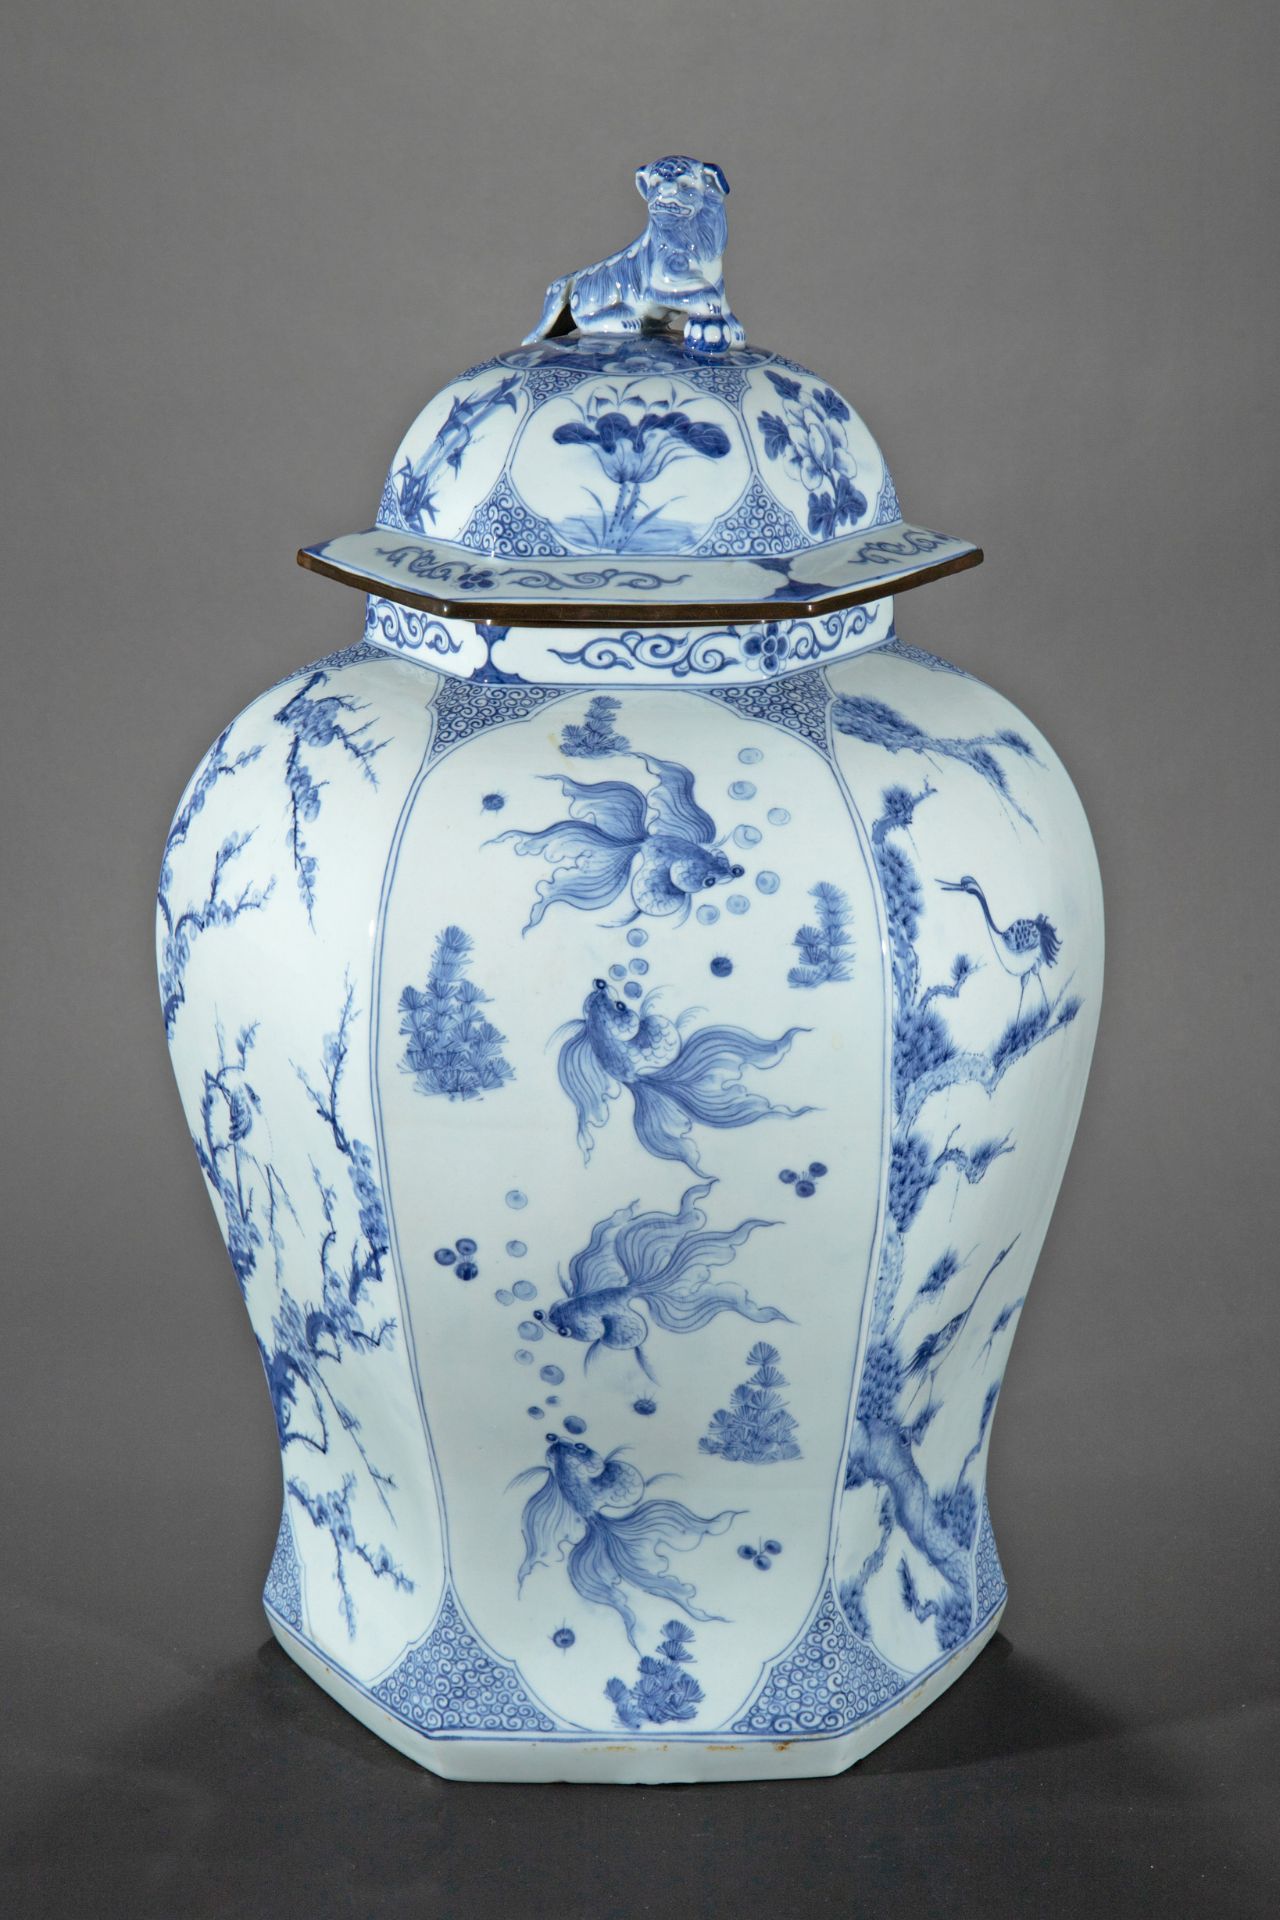 Large lidded vase, probably Korea, China, Japan